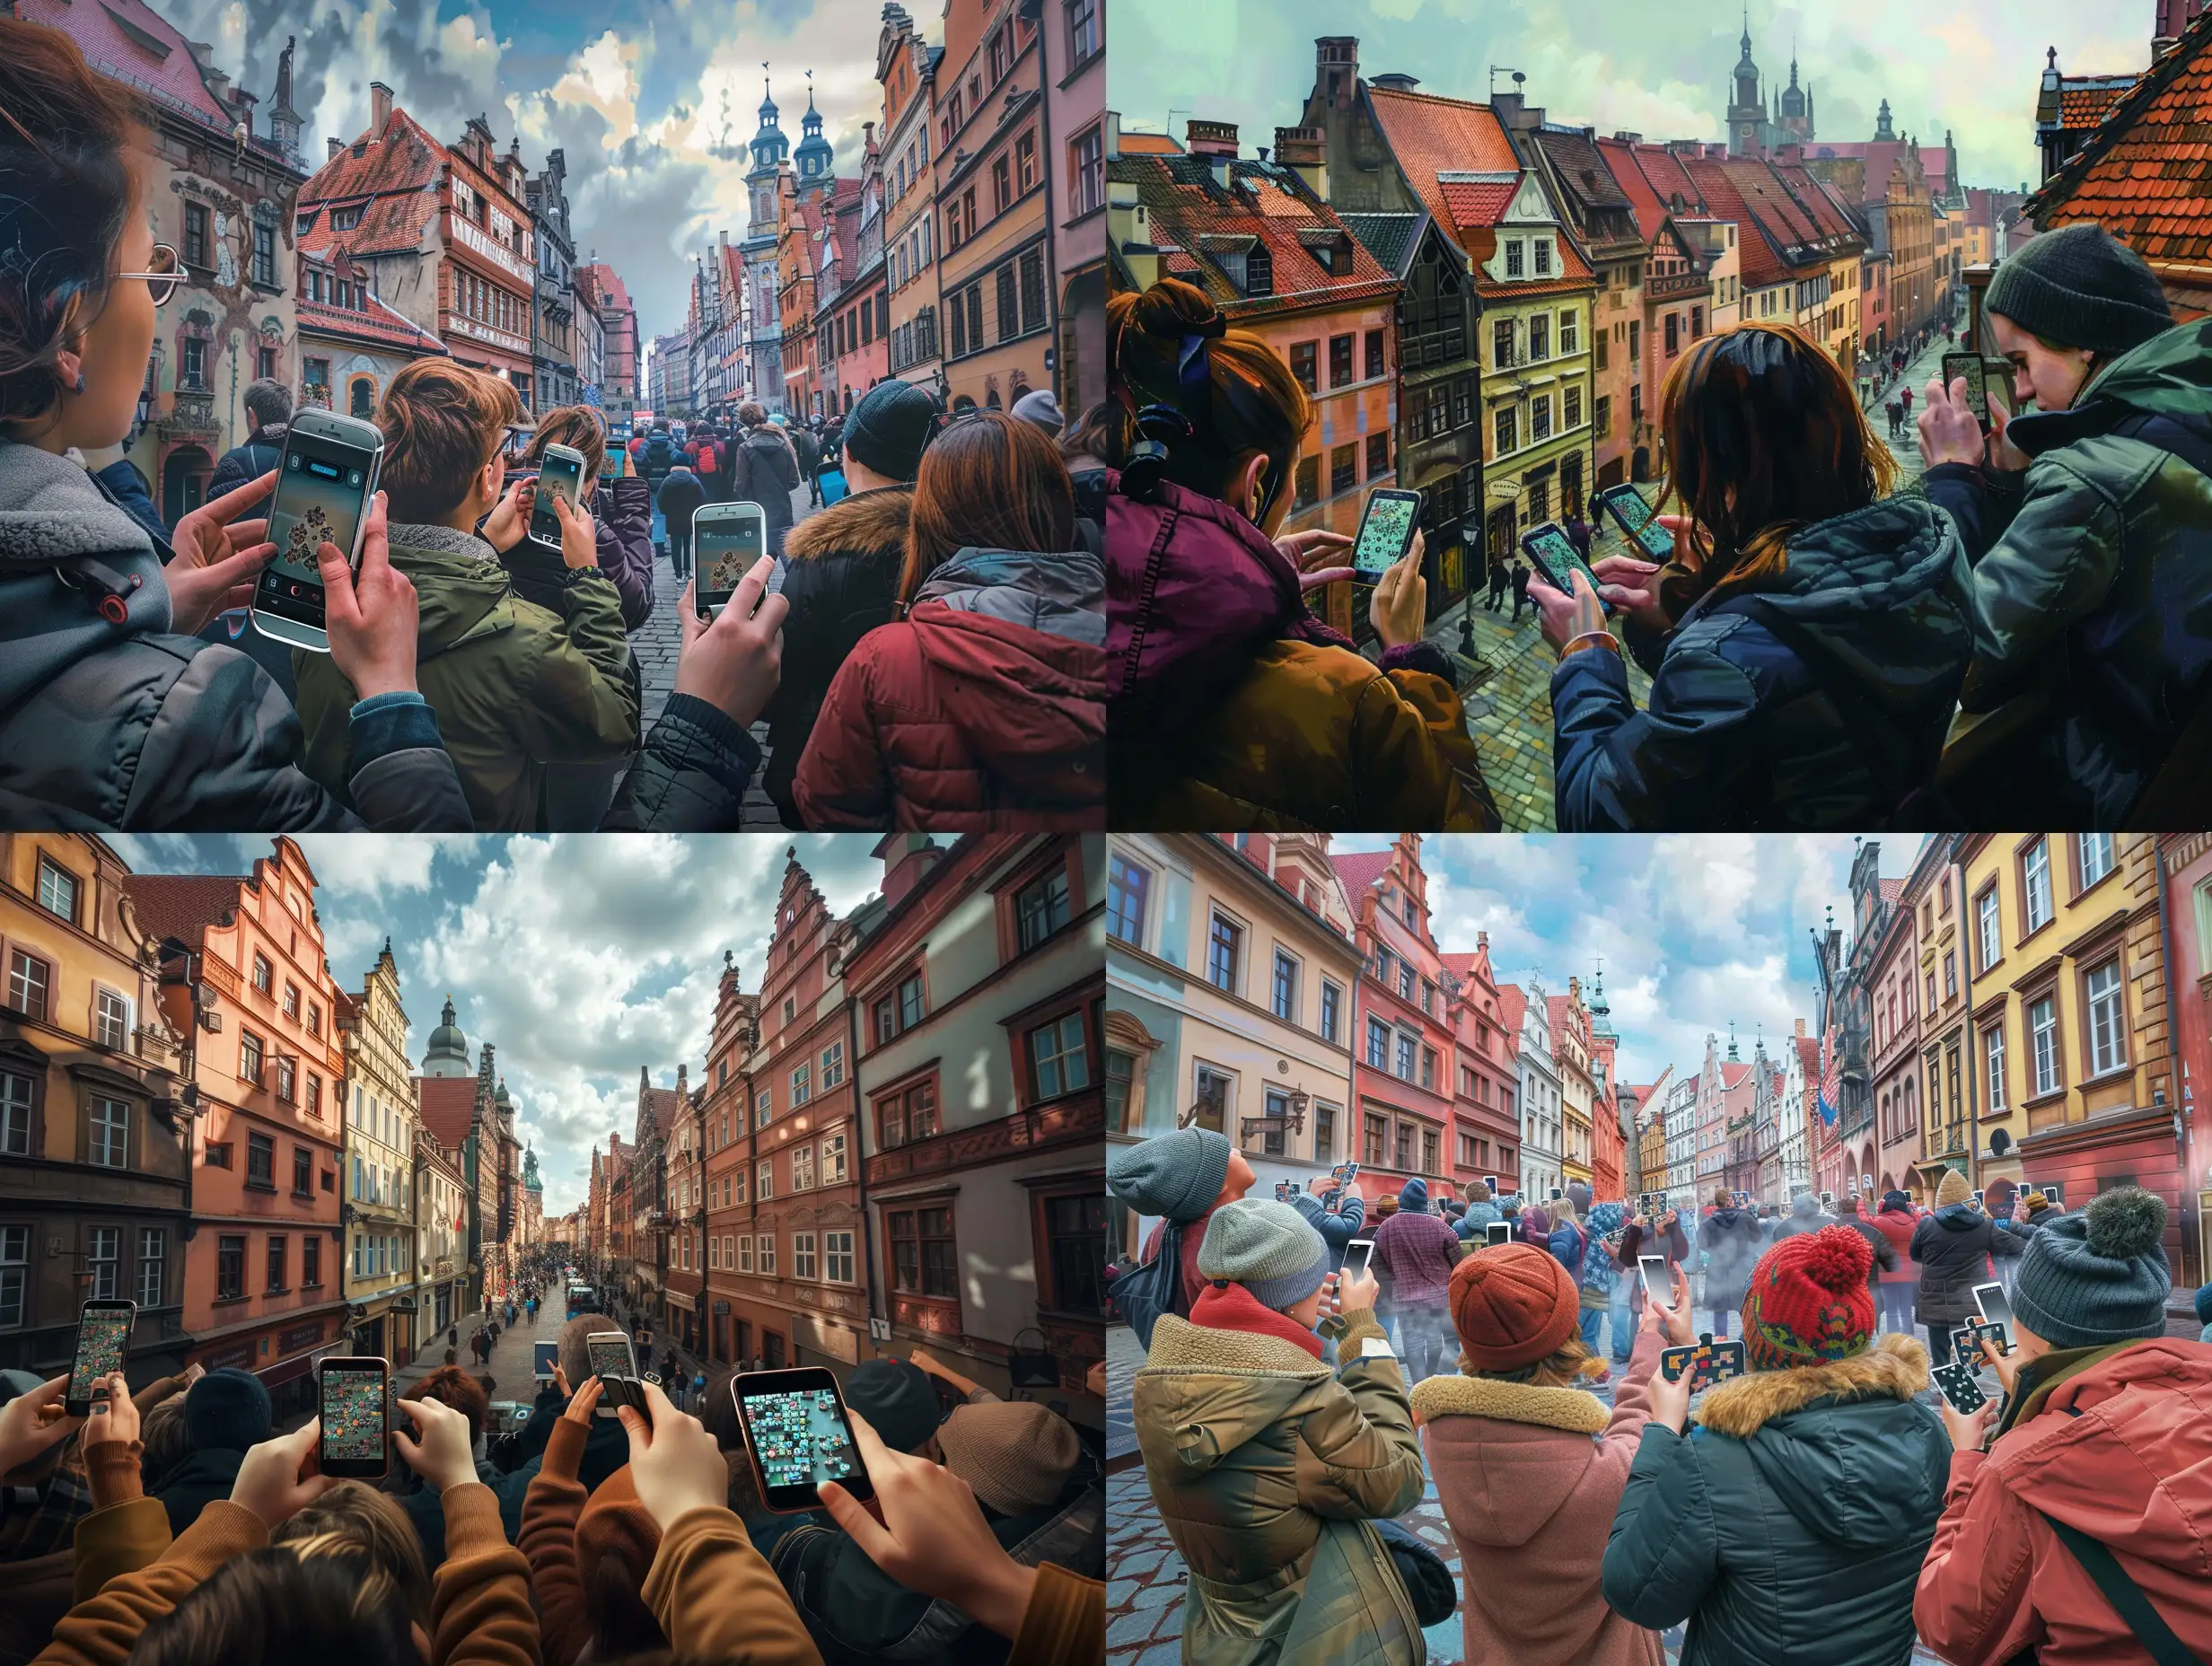 Grupa ludzi z telefonami komórkowymi w rękach rozwiązujących zagadki na tle zabytkowych ulic Starego Miasta w Wrocławiu, z widocznymi charakterystycznymi kamienicami i wąskimi uliczkami, w dynamicznej i pełnej emocji atmosferze, maksymalnie realistyczne odzwierciedlenie zdjęcia